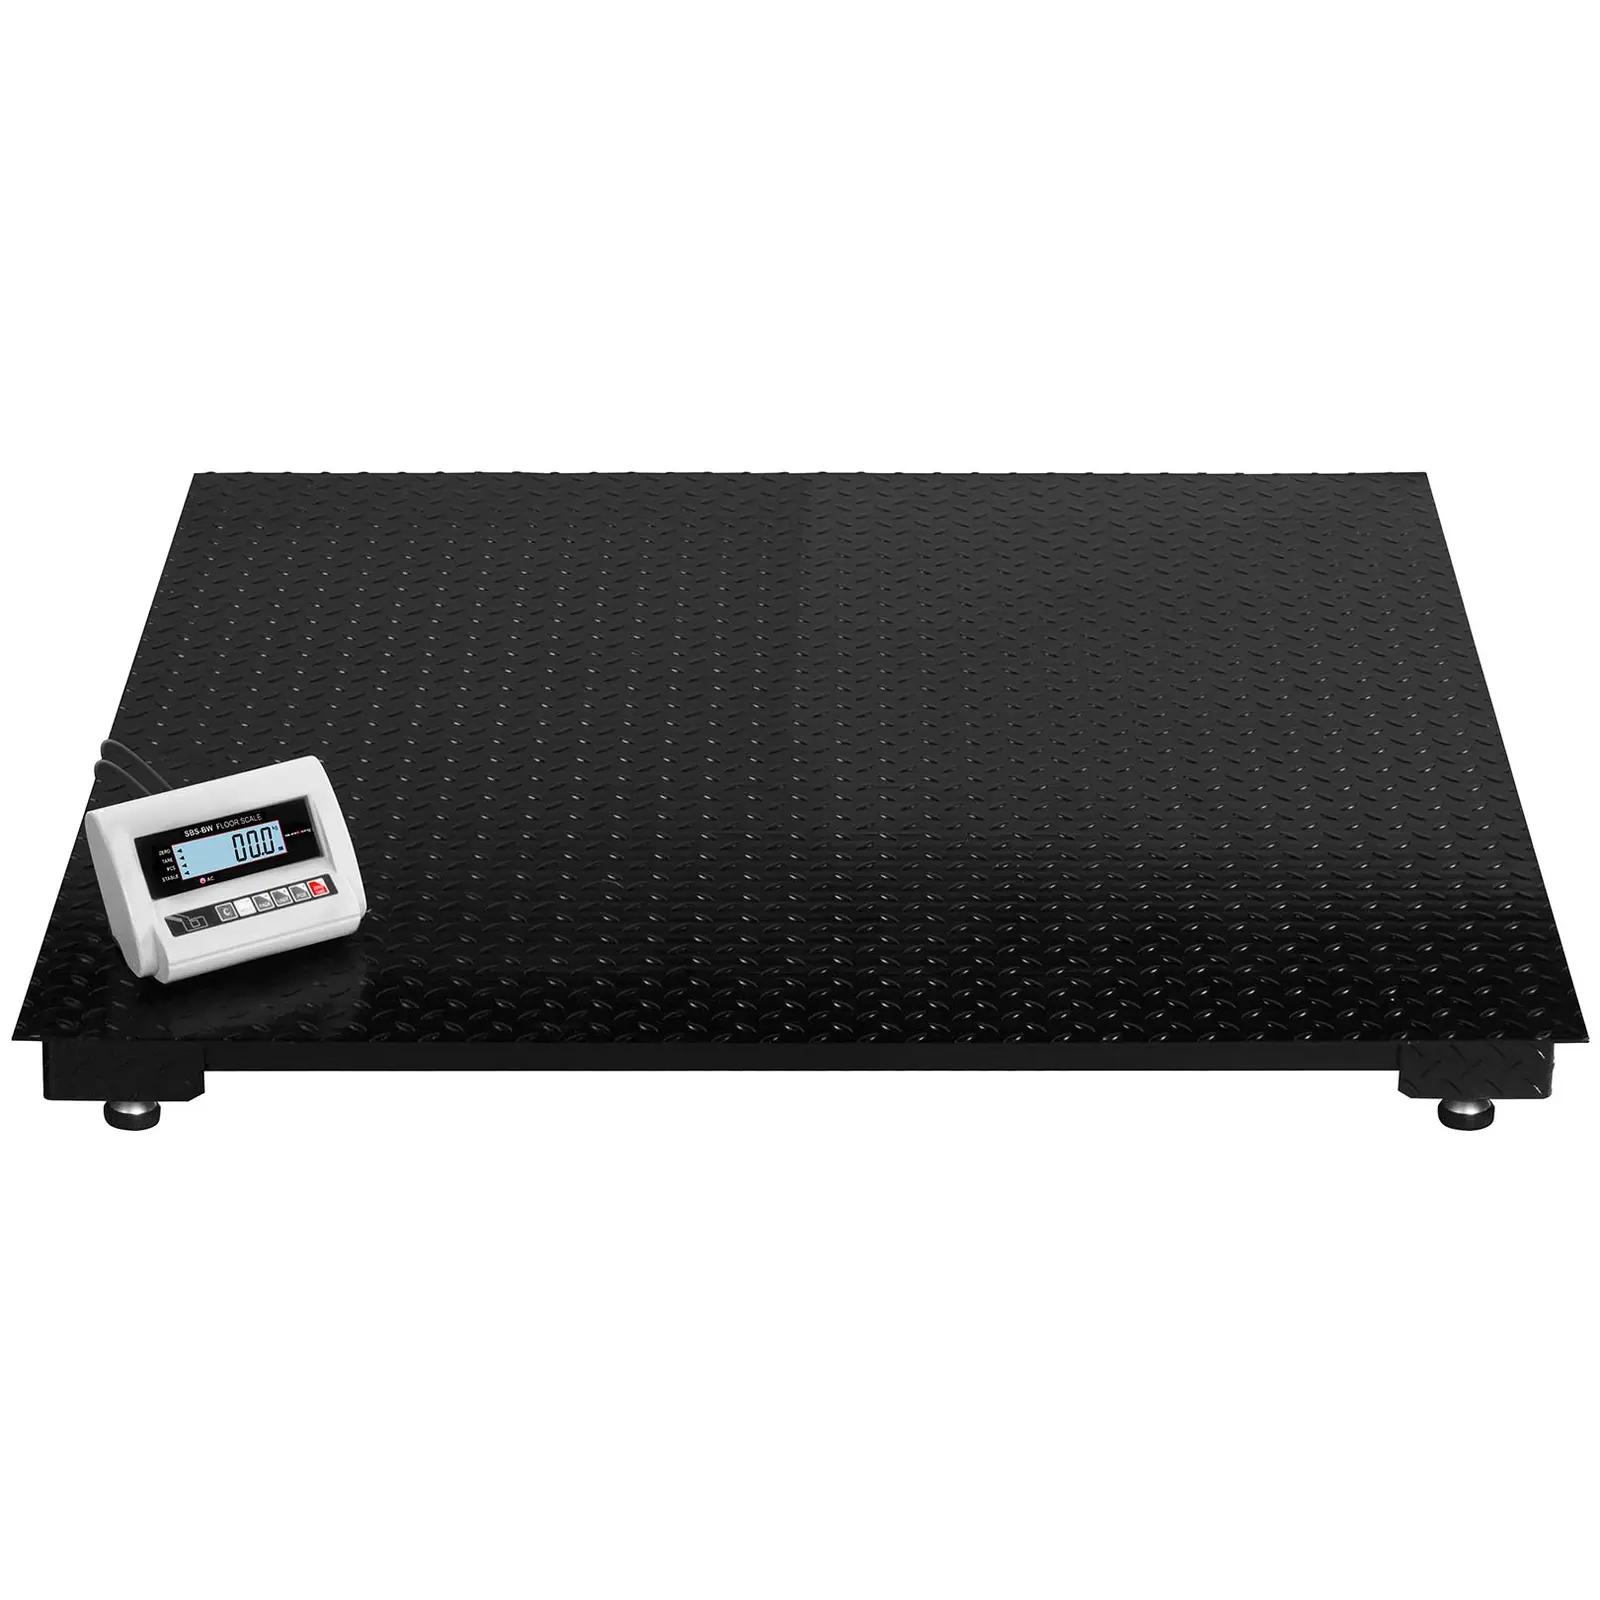 Podlahová váha - 5 t/2 kg - LCD